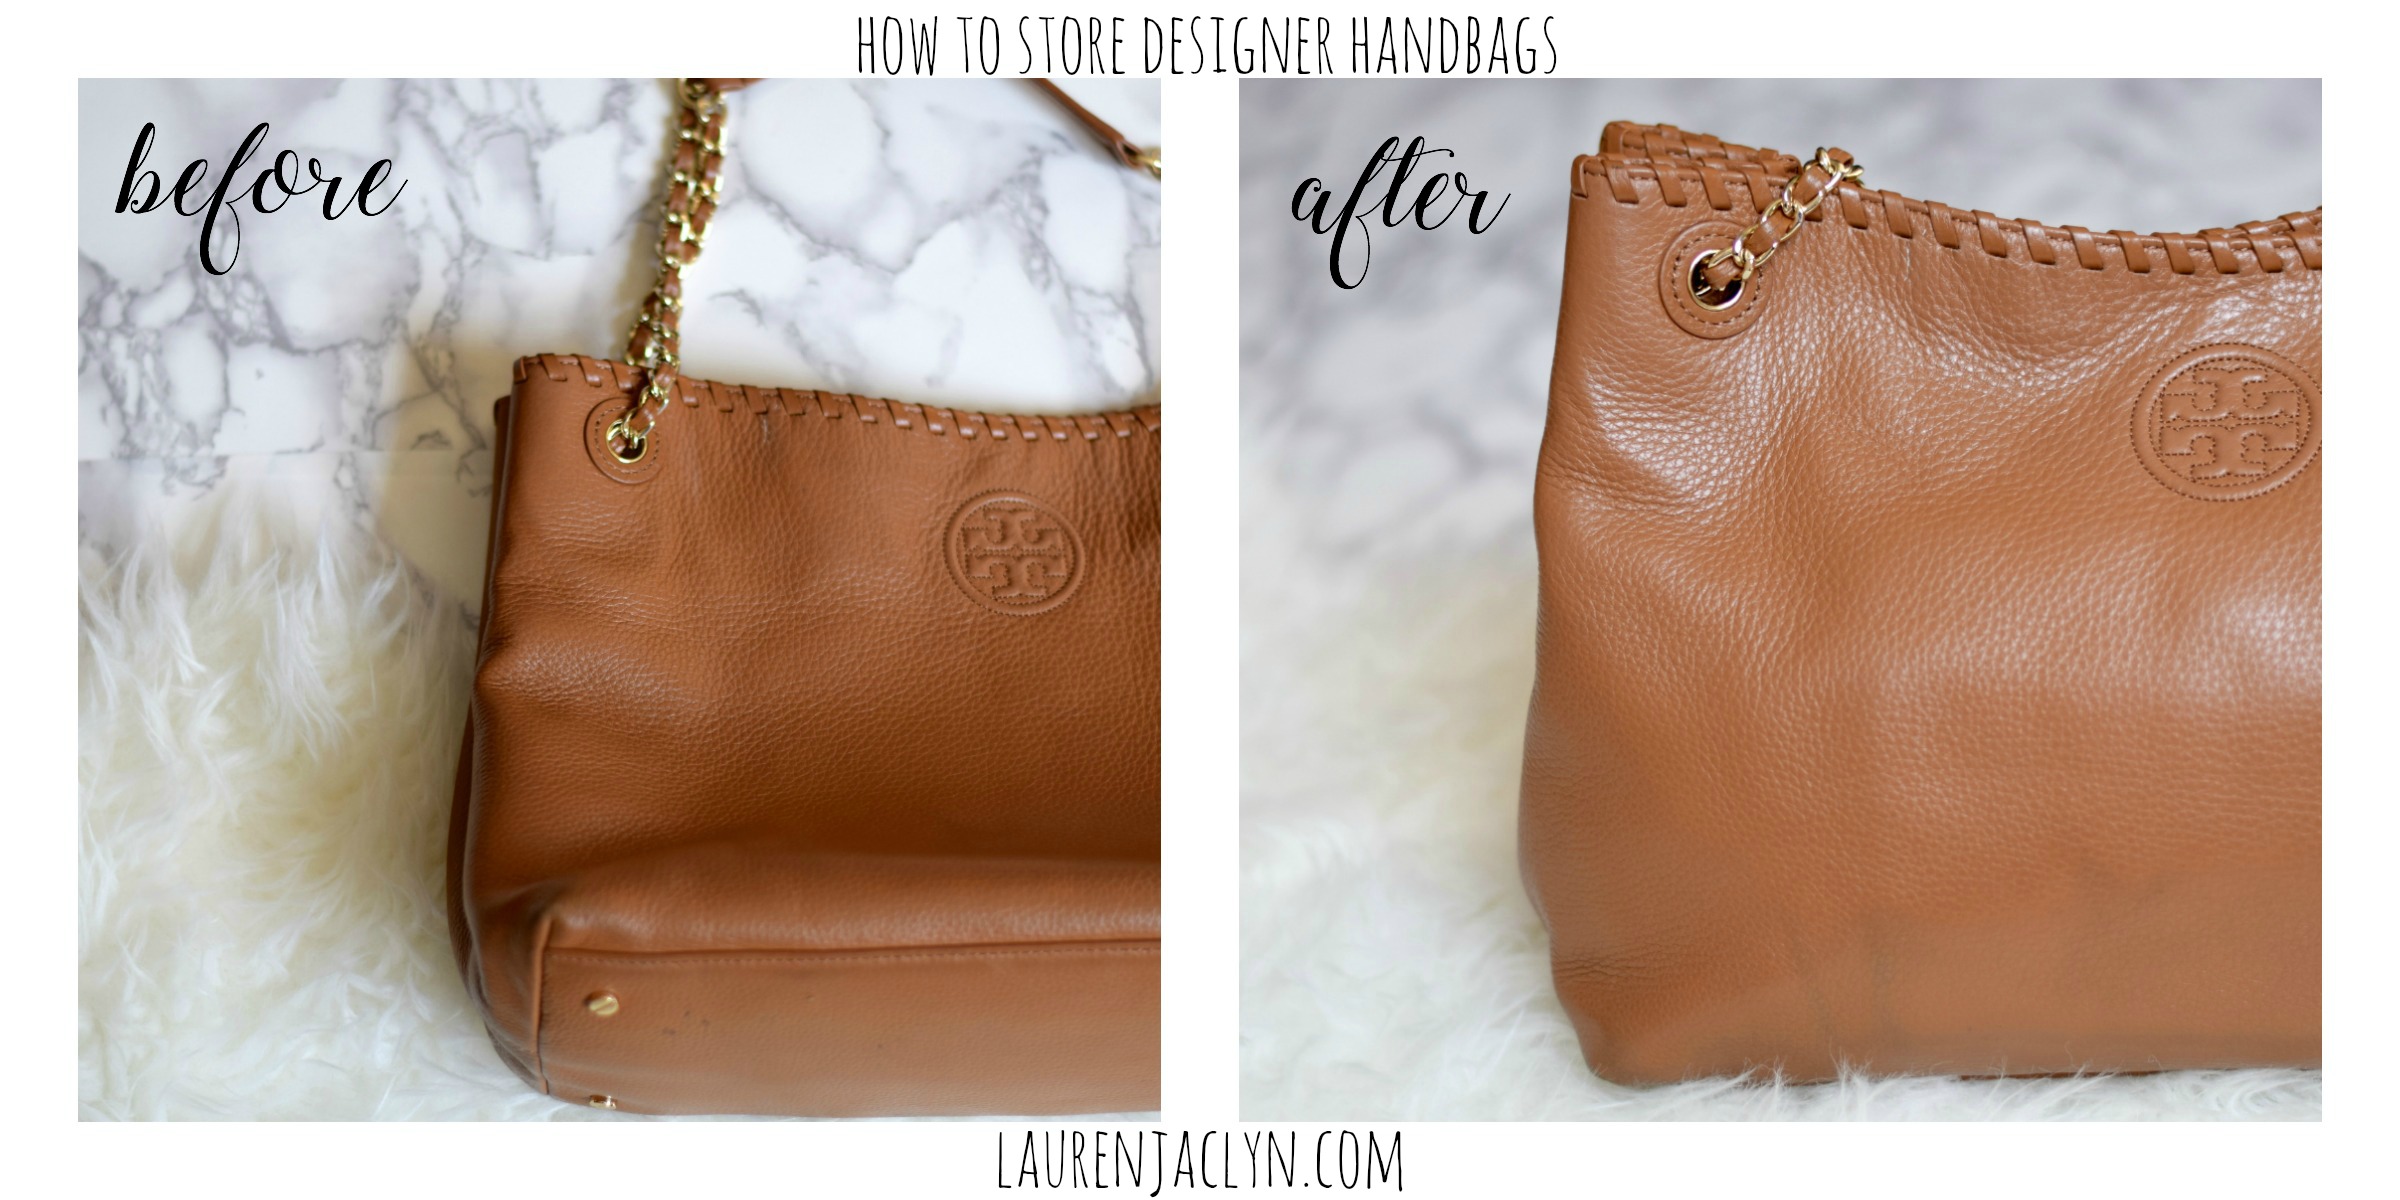 How to Store Designer Handbags - Lauren Jaclyn